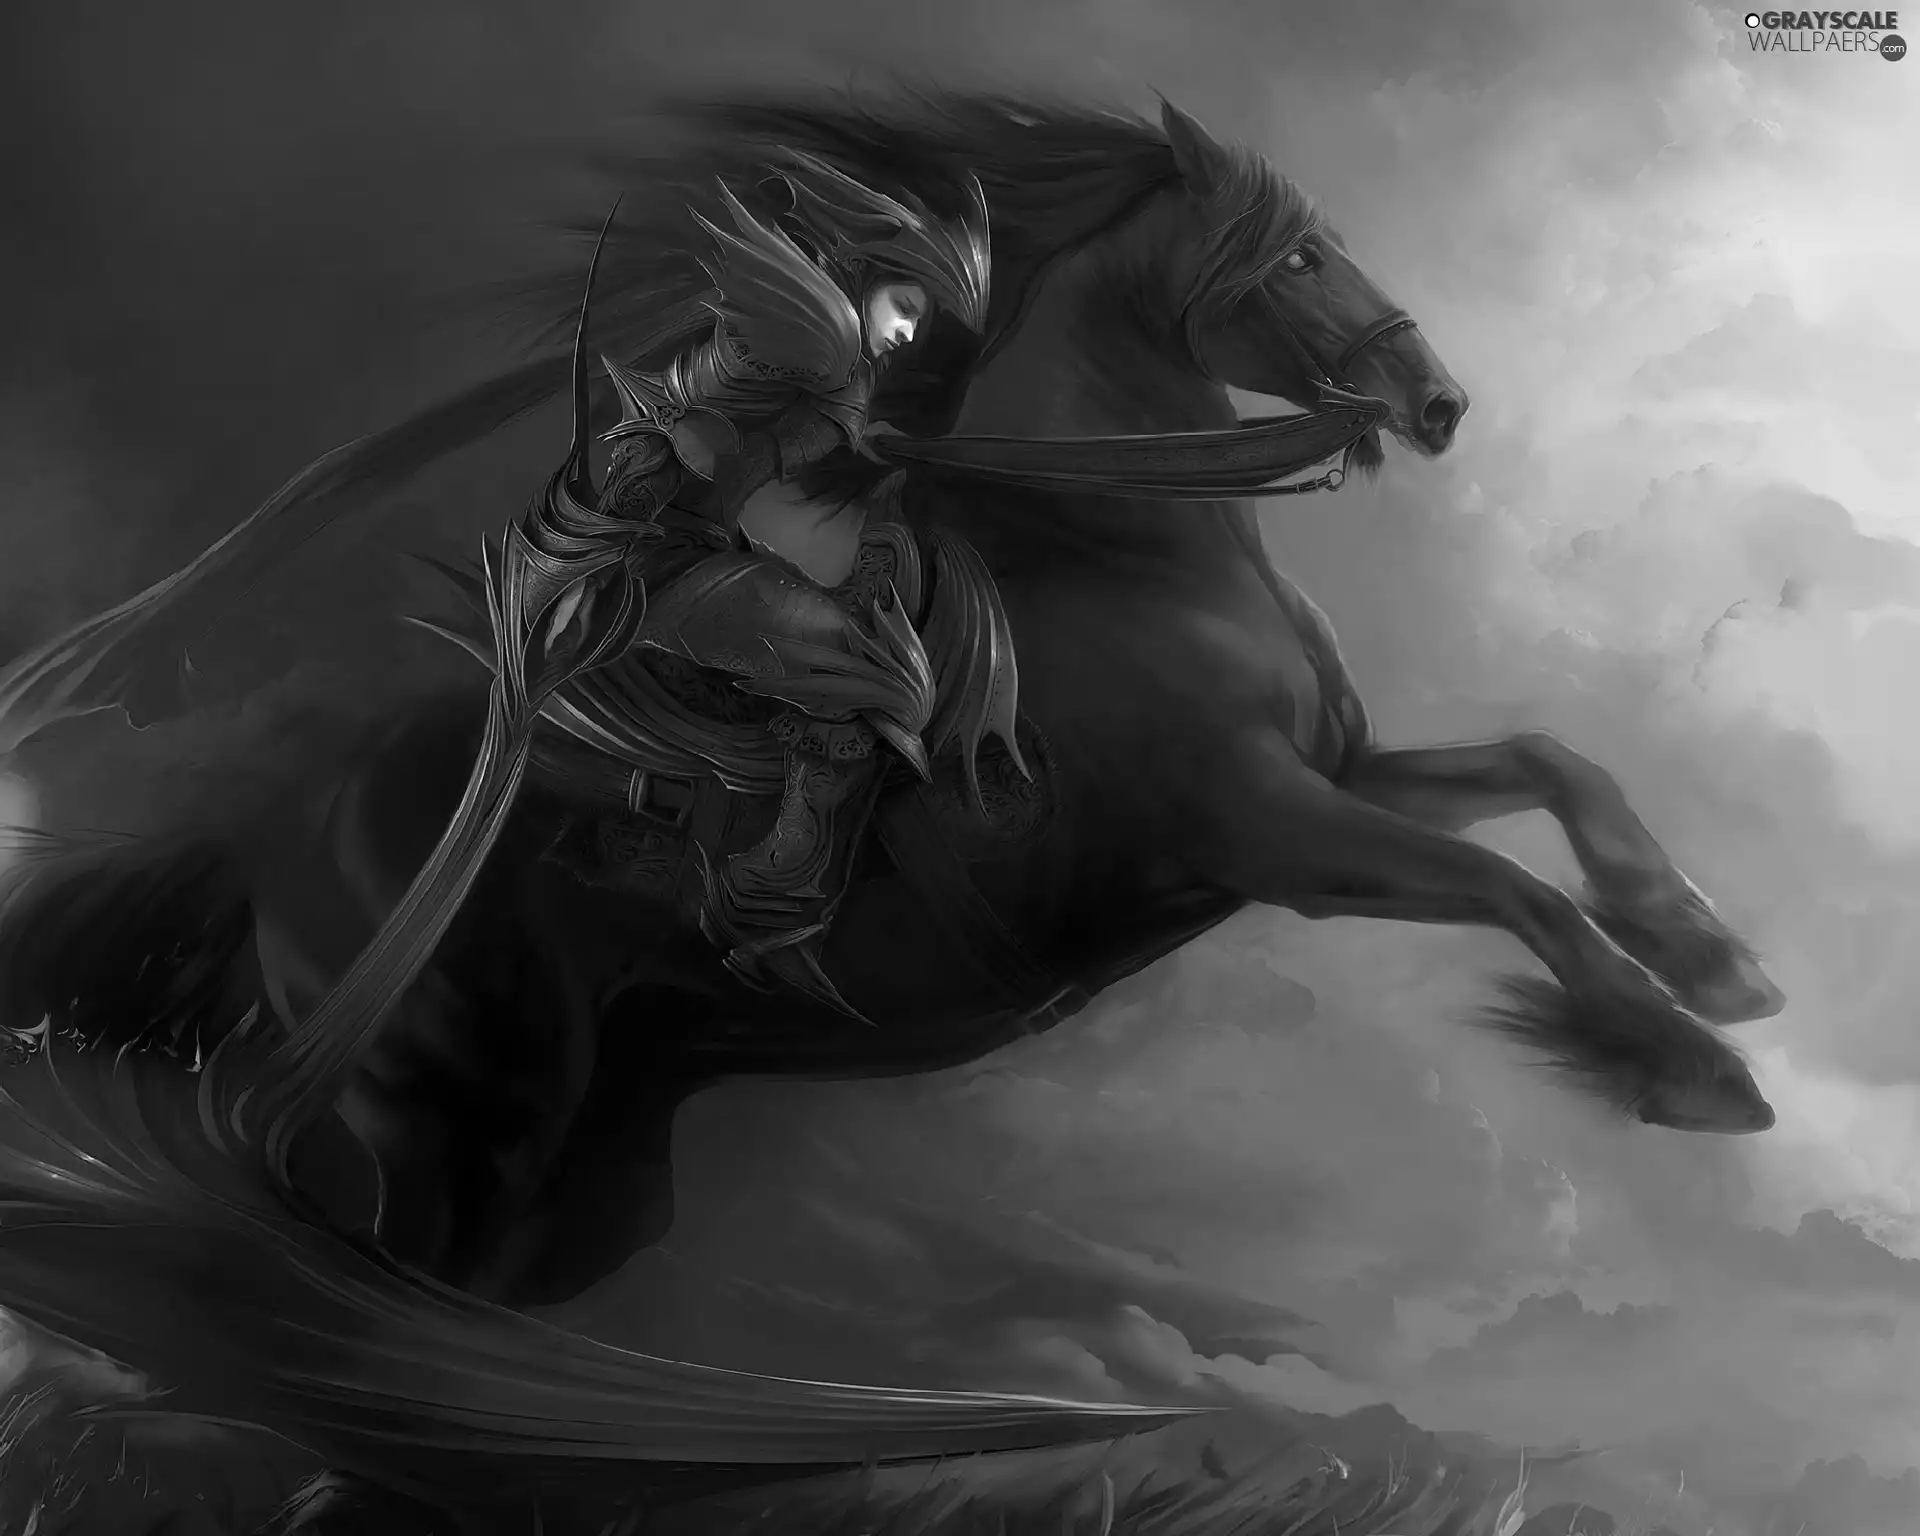 Horse, Women, warrior